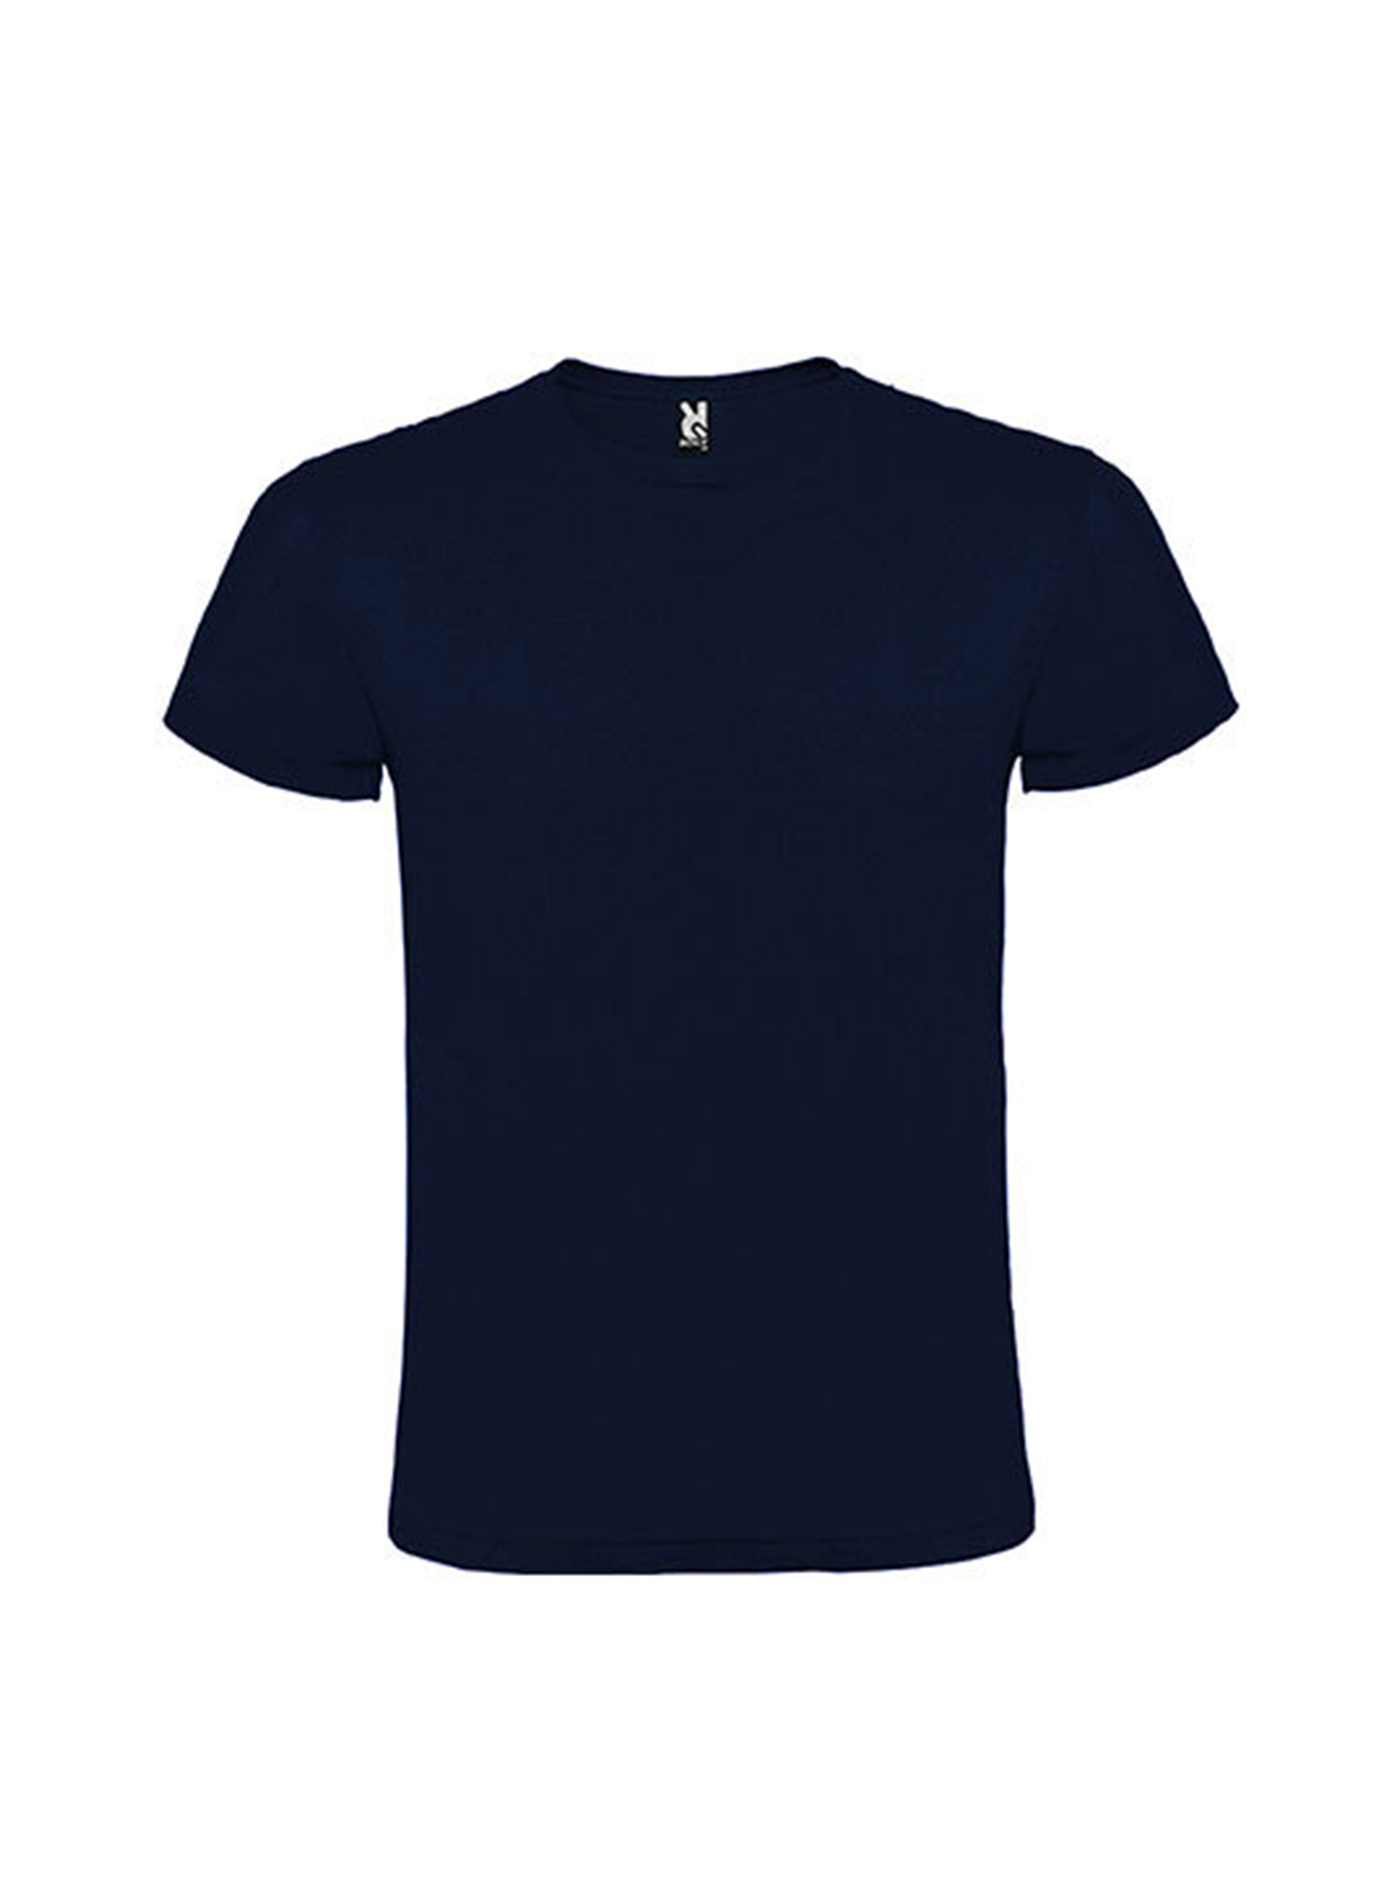 Pánské tričko Roly Atomic - Námořnická modrá XL